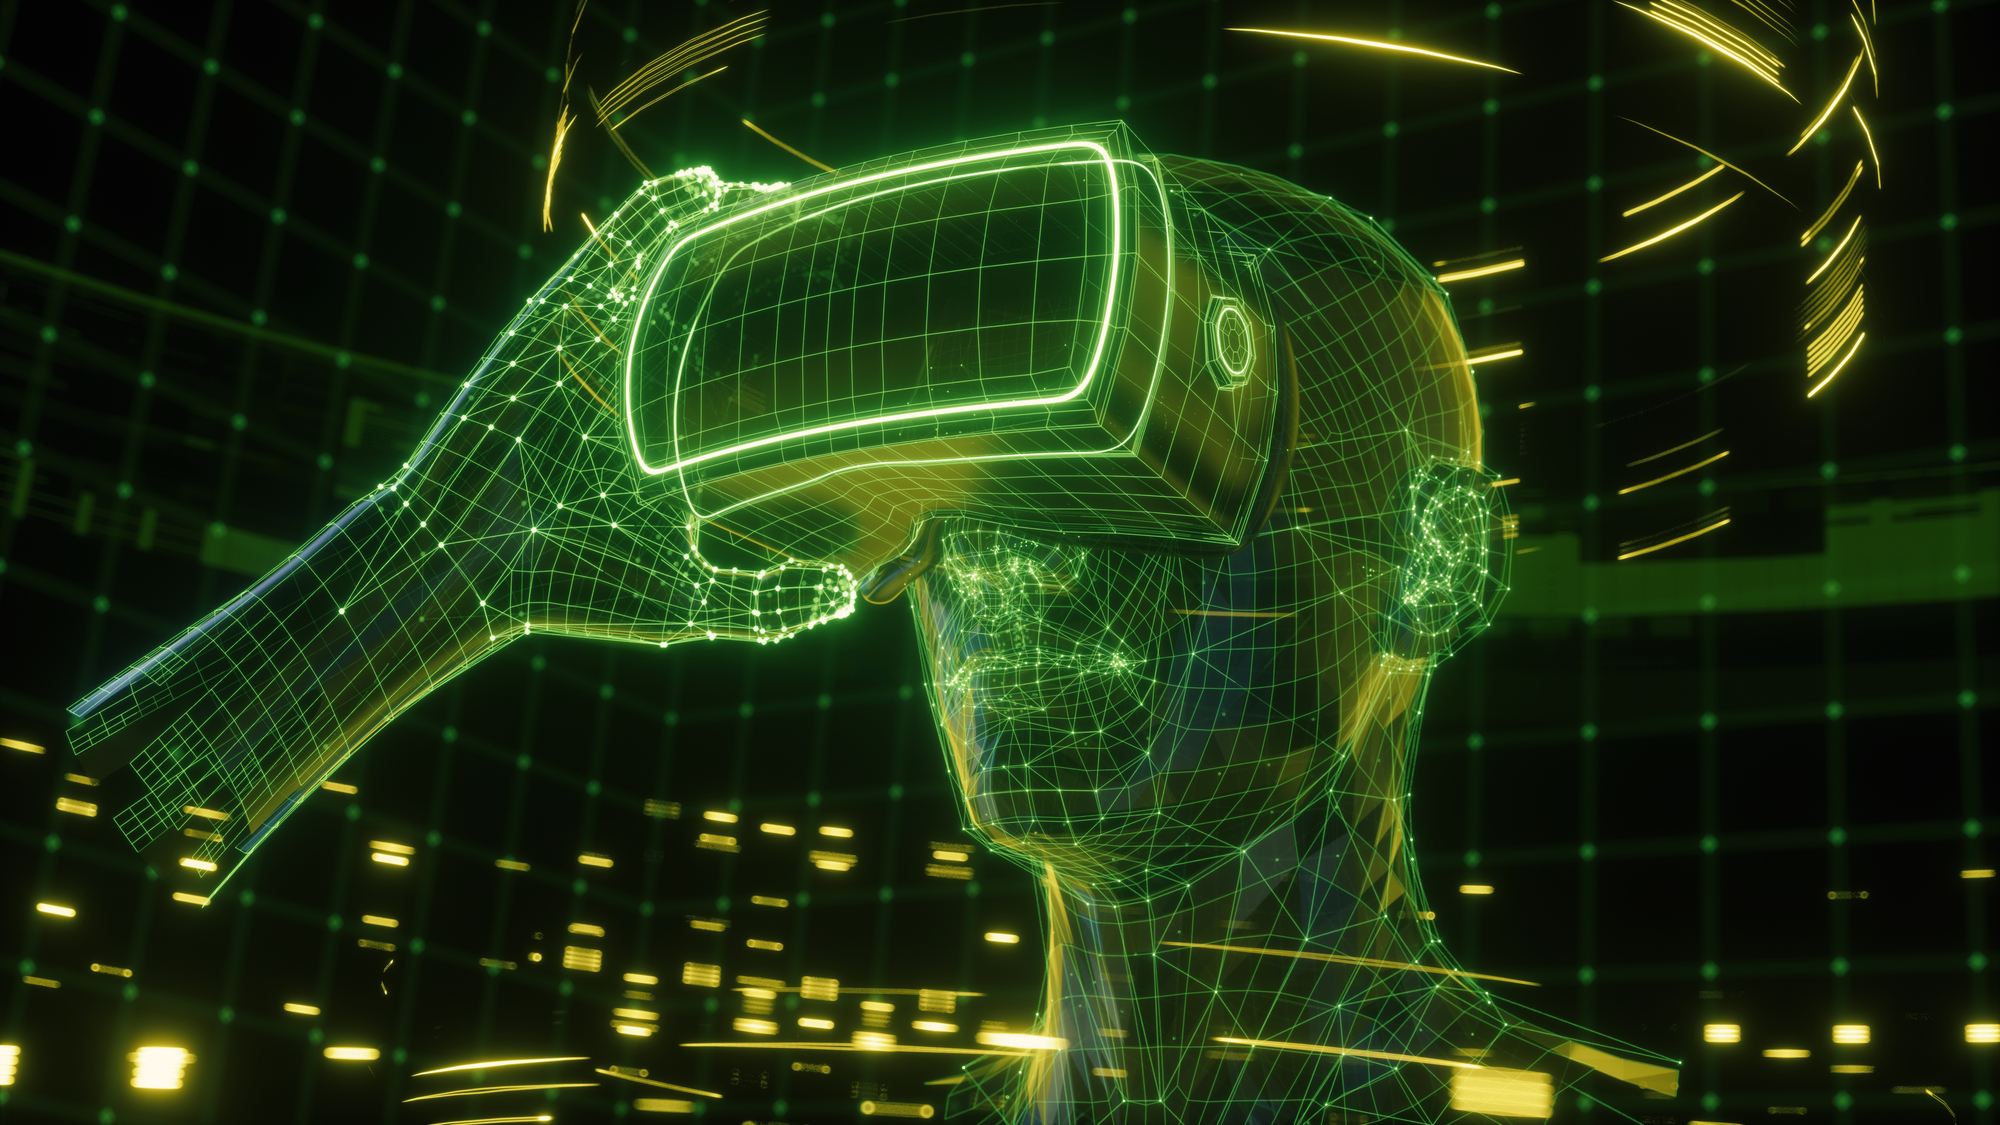 Un monde virtuel où les individus coiffent des casques pour communiquer et vivre leur vie par avatars 3D et réalité augmentée interposés. /crédit DepositPhoto